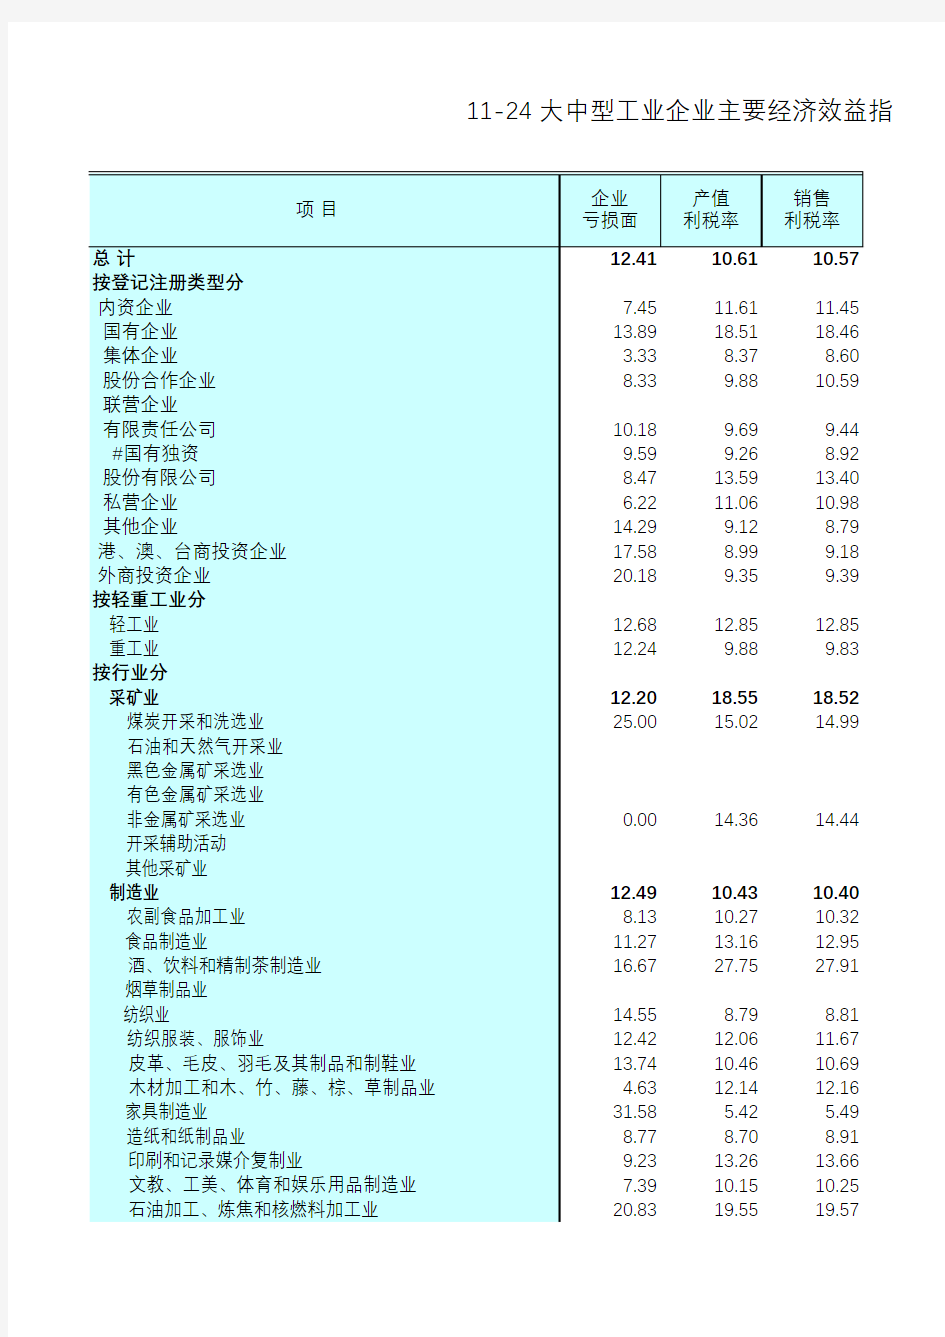 江苏统计年鉴2015社会经济发展指标：大中型工业企业主要经济效益指标(2013年)